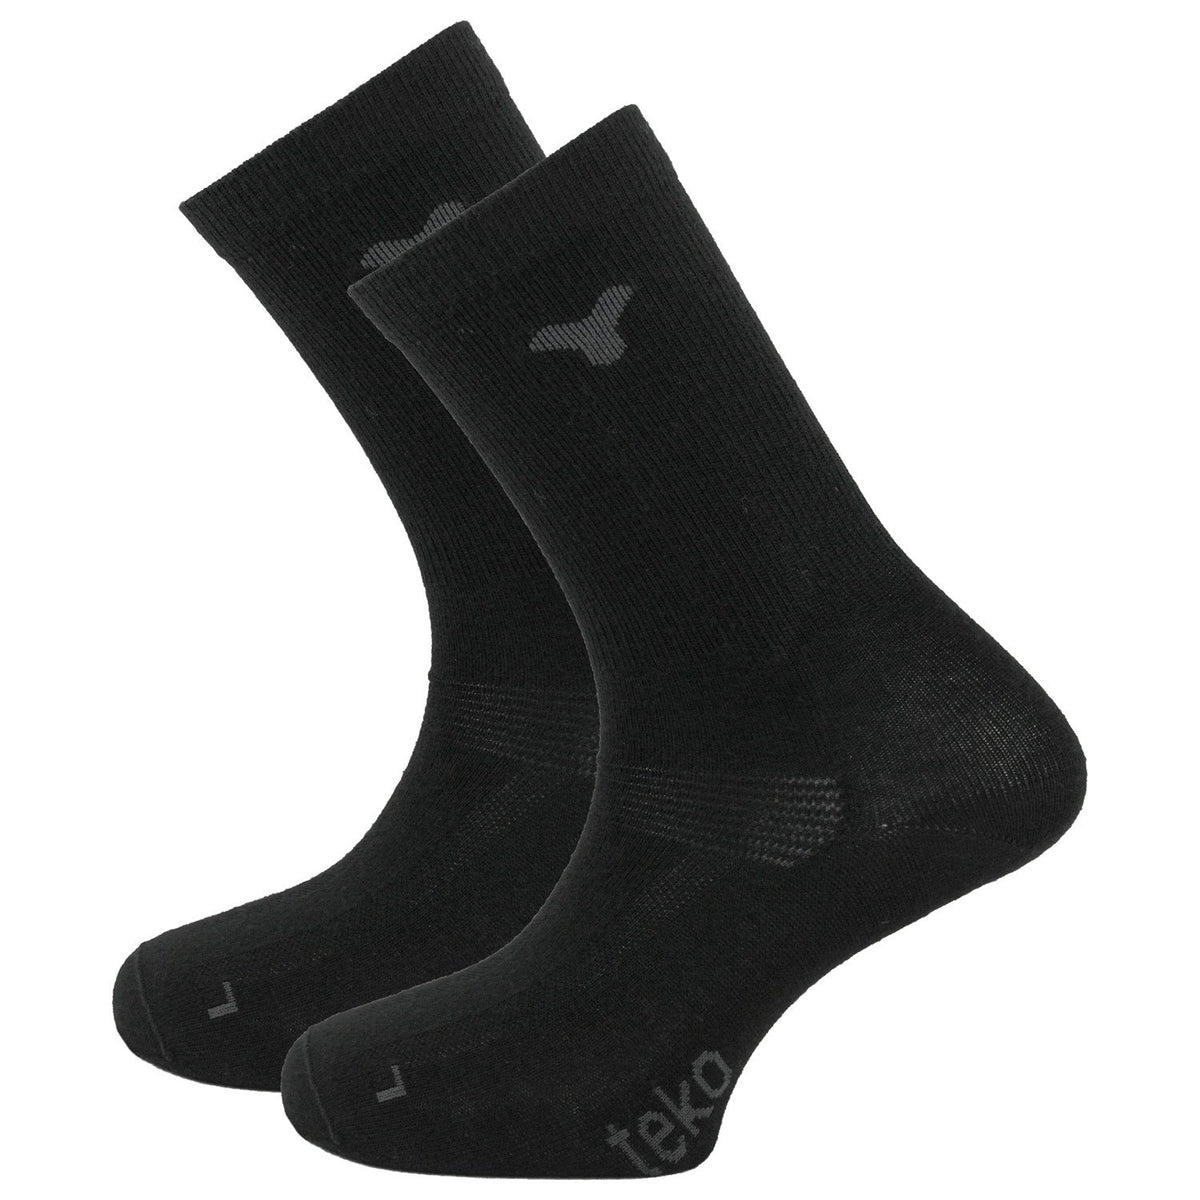 TEKO eco HIKE 1.0 MERINO BaseLINER Ultralight Socks - 2 PAIR PACK